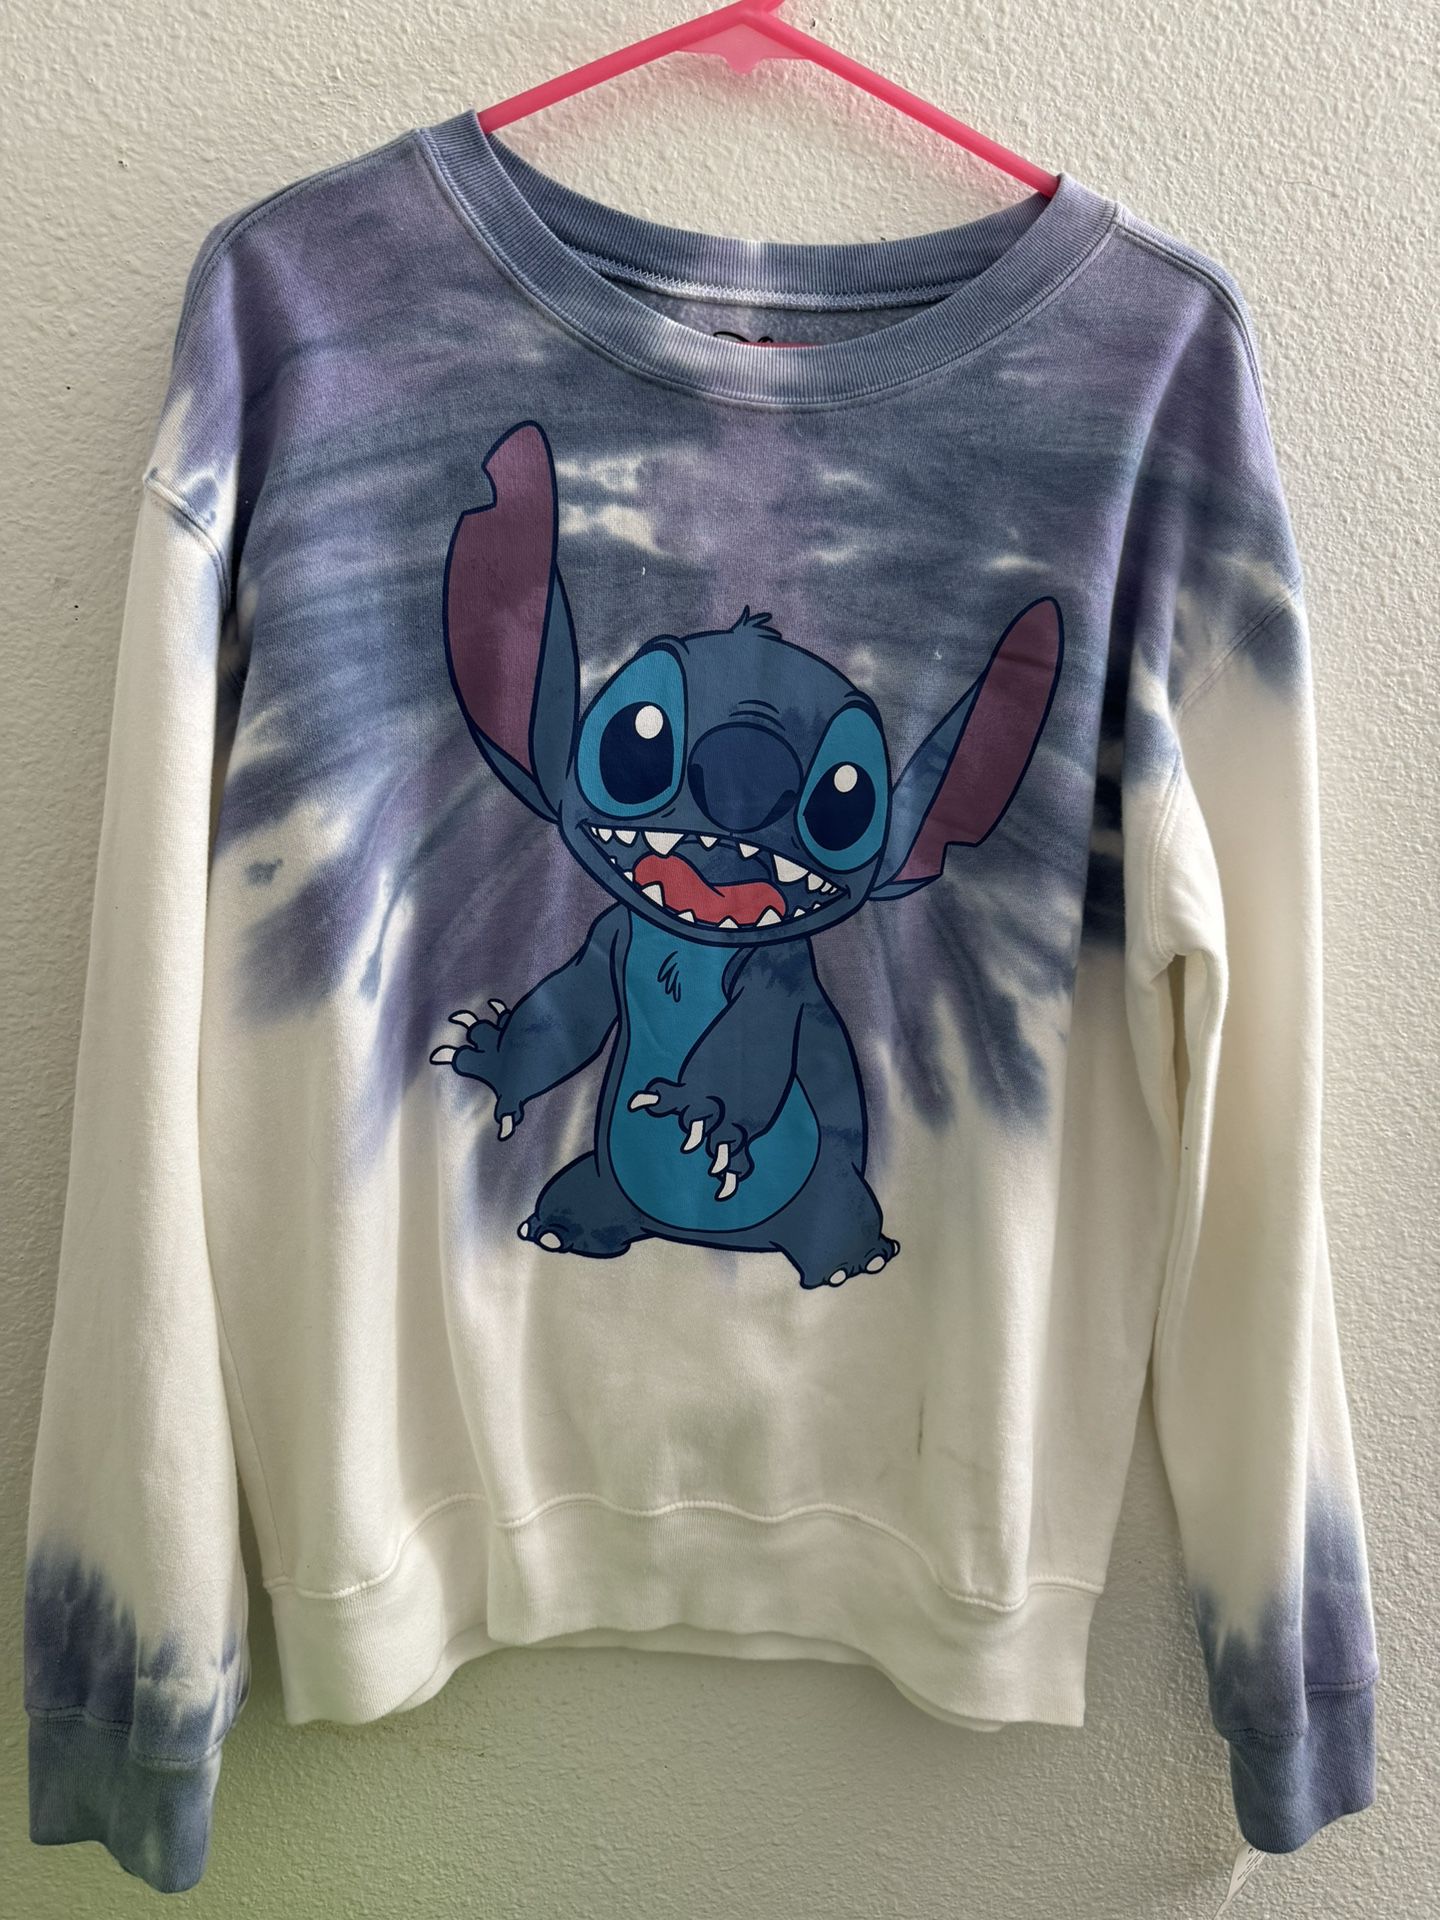 Disney Tie Dye Sweatshirt 